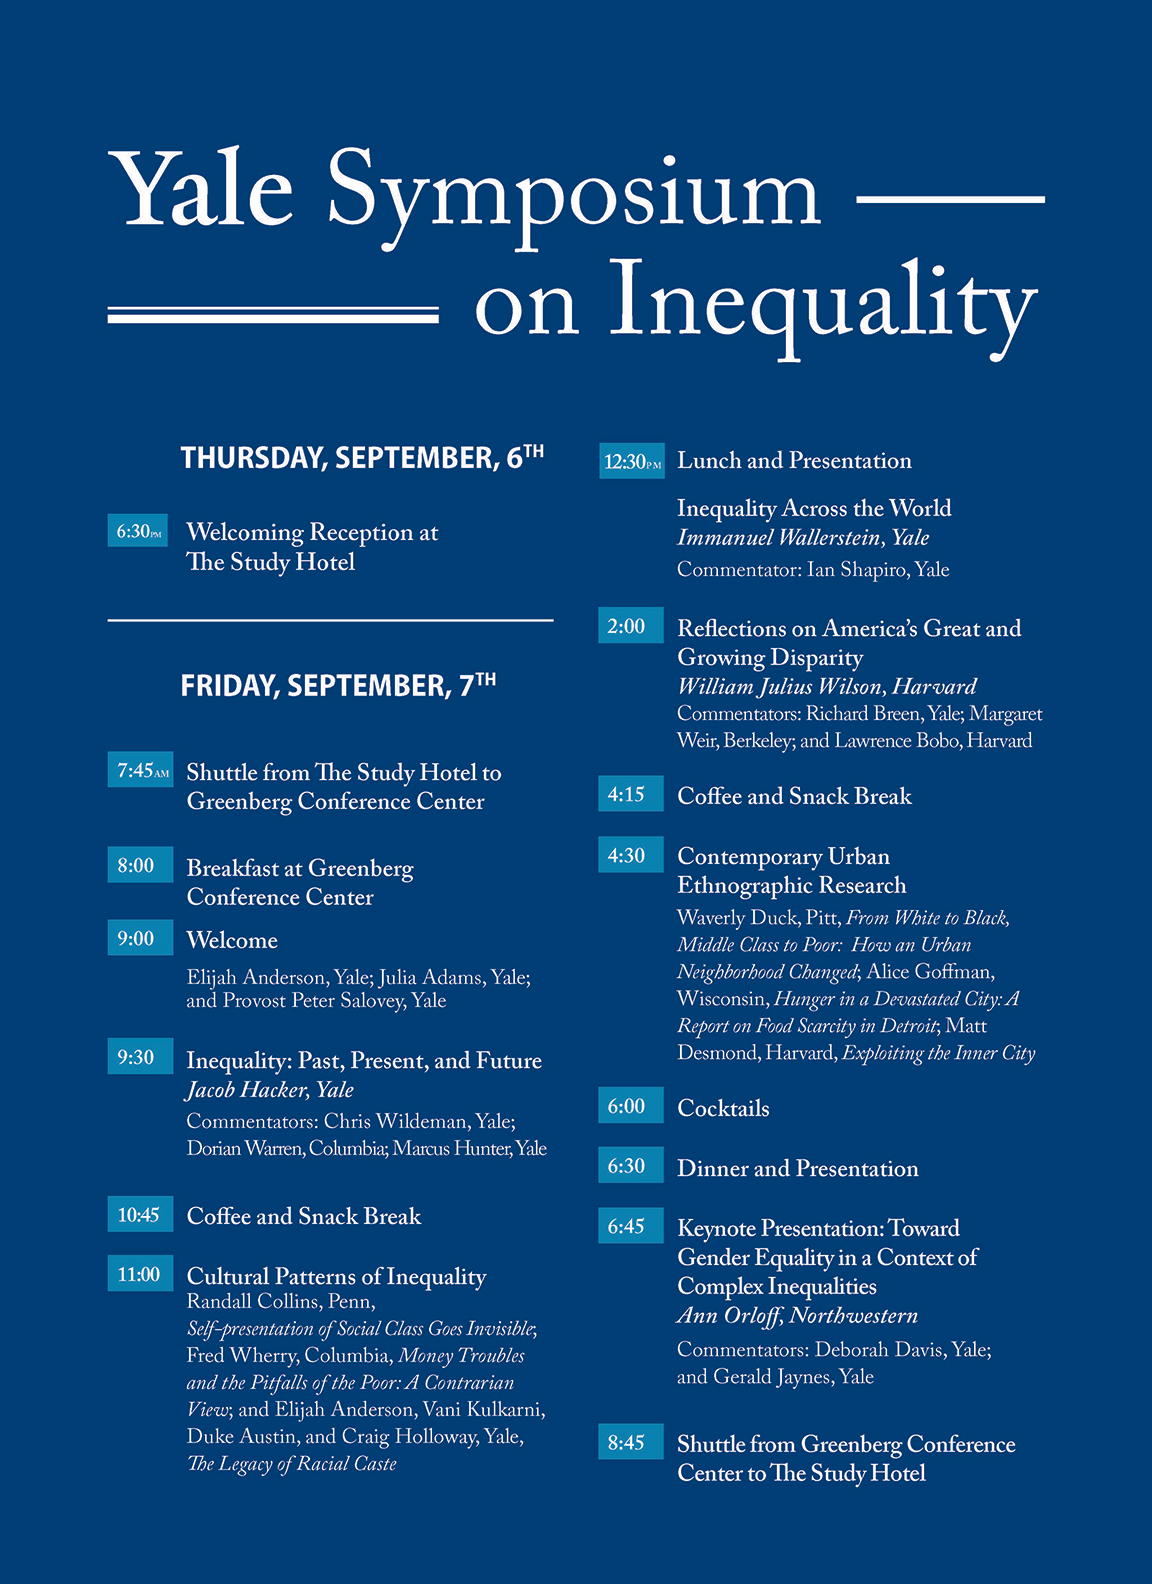 Yale Symposium on Inequality